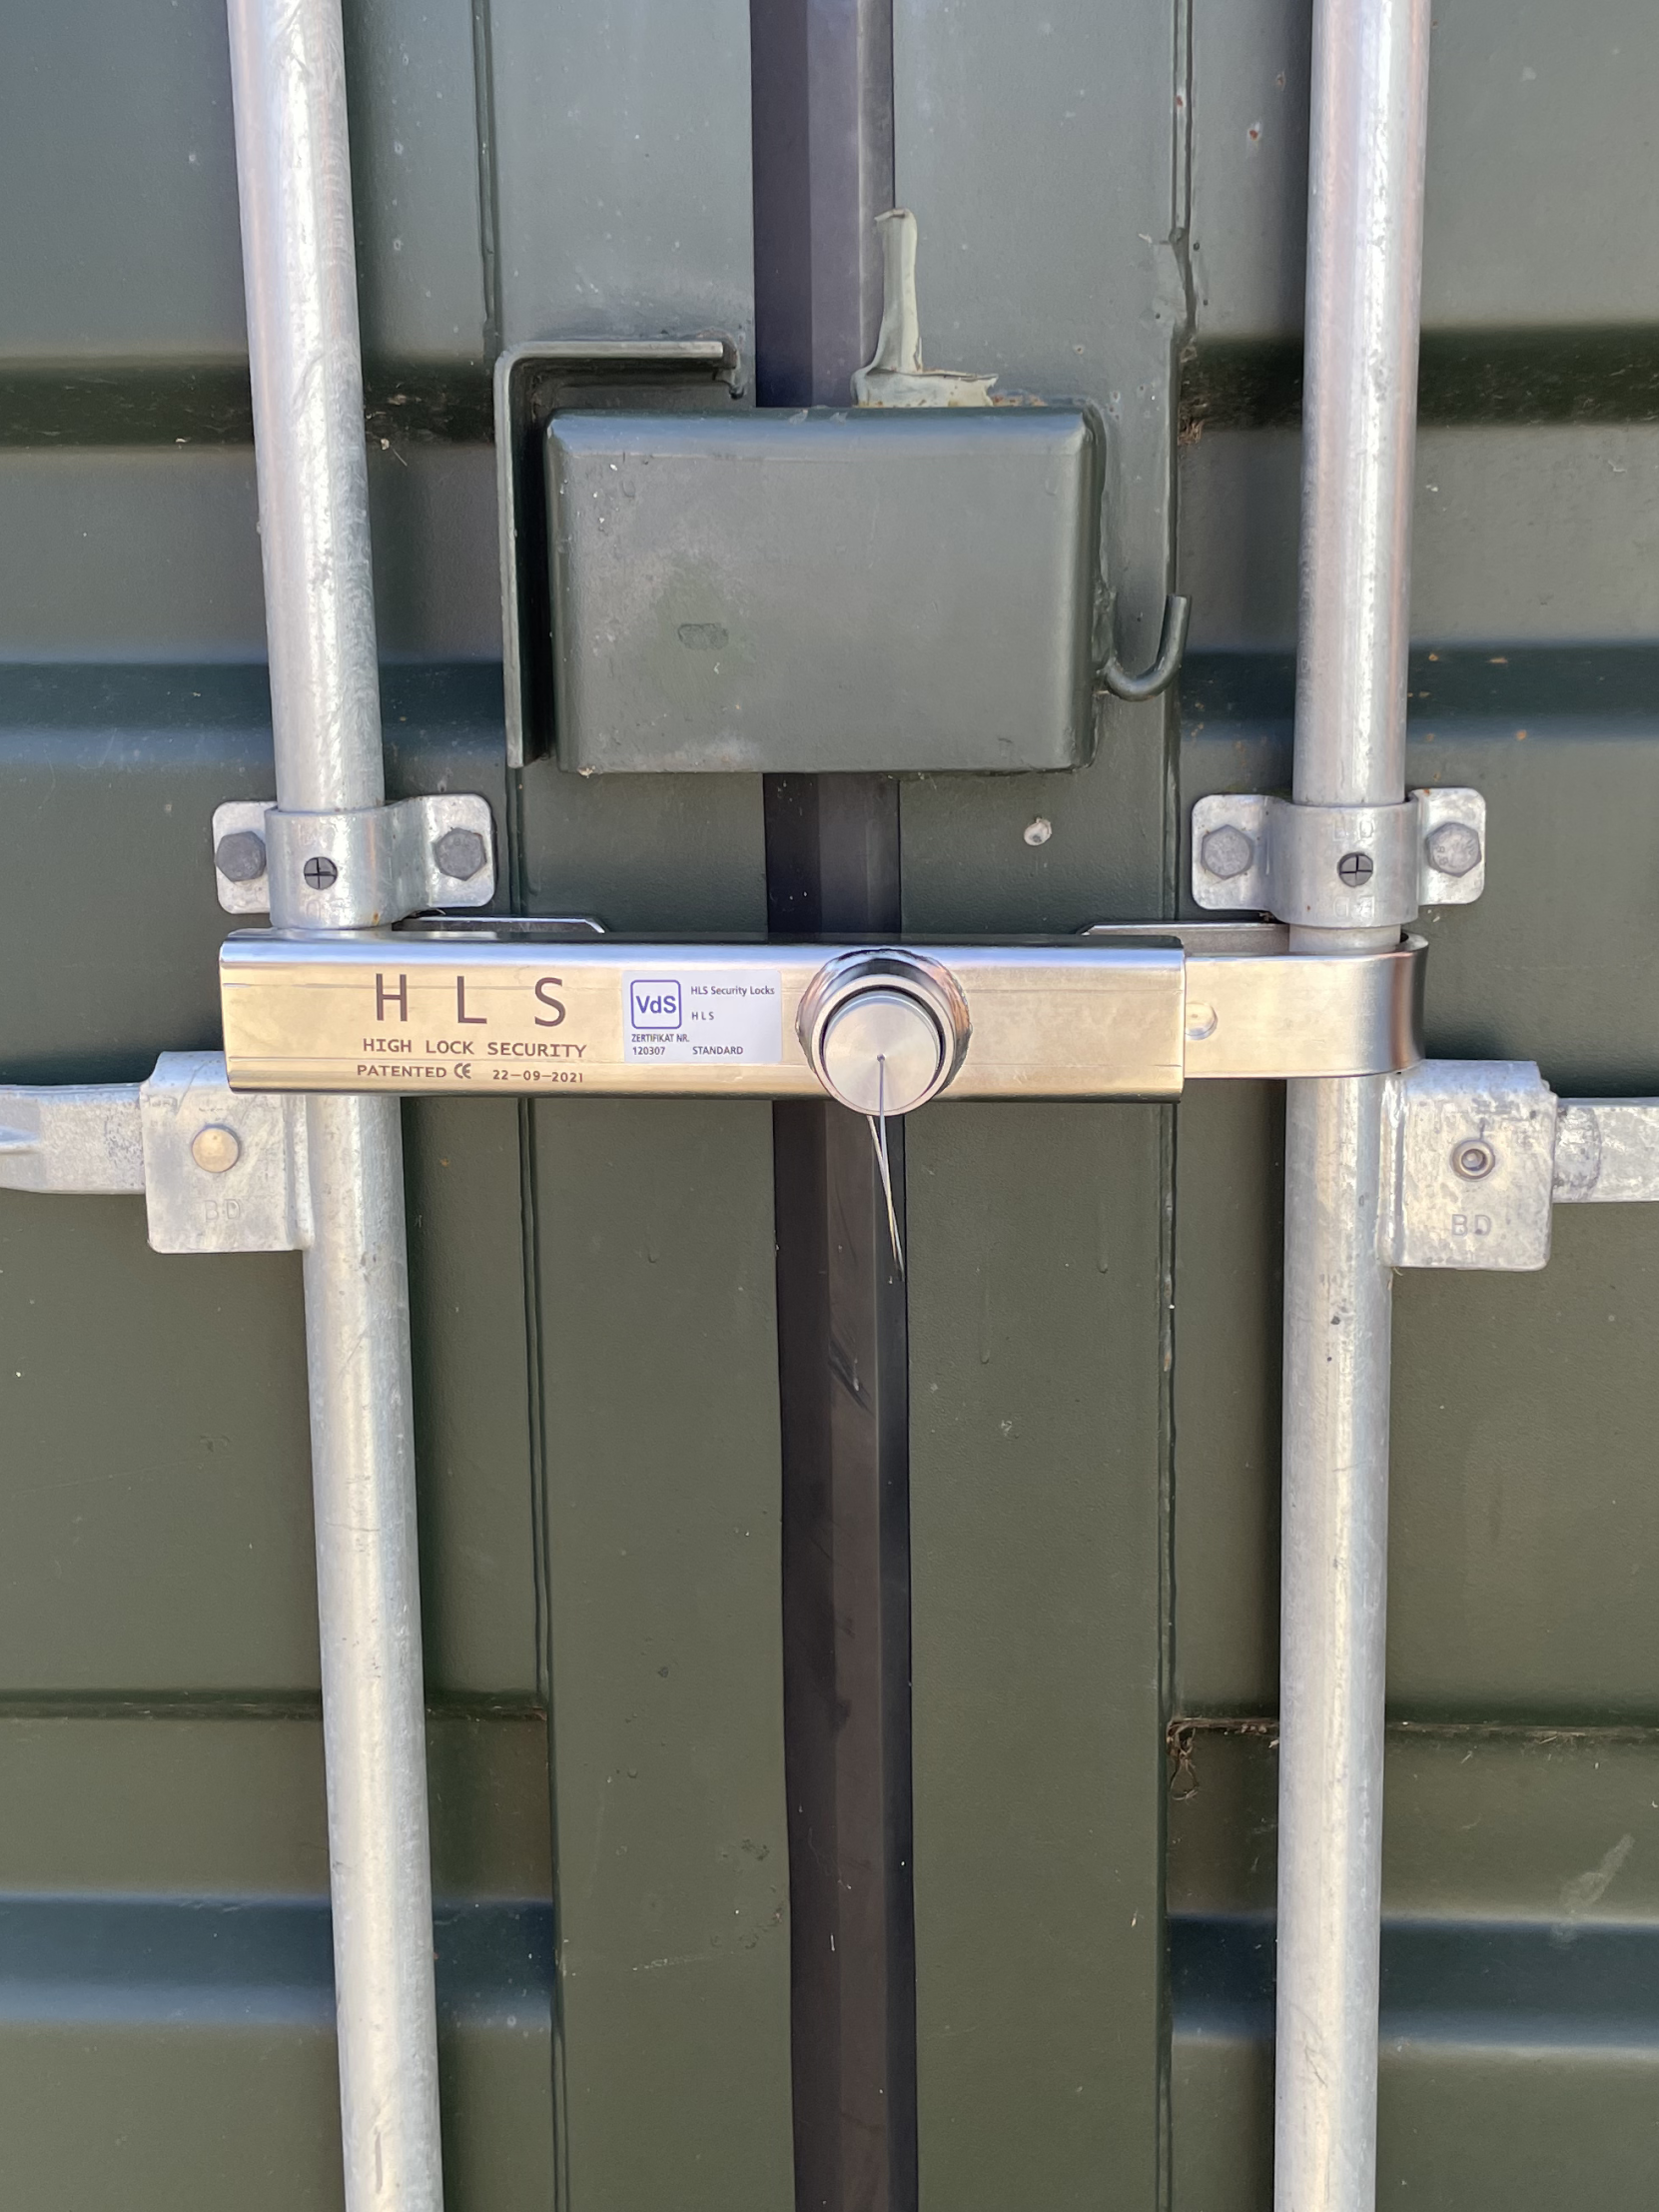 Kontainer lås fra HLS - CRO optimering udført - billedet viser hvordan låsen sidder fast på en kontainer 